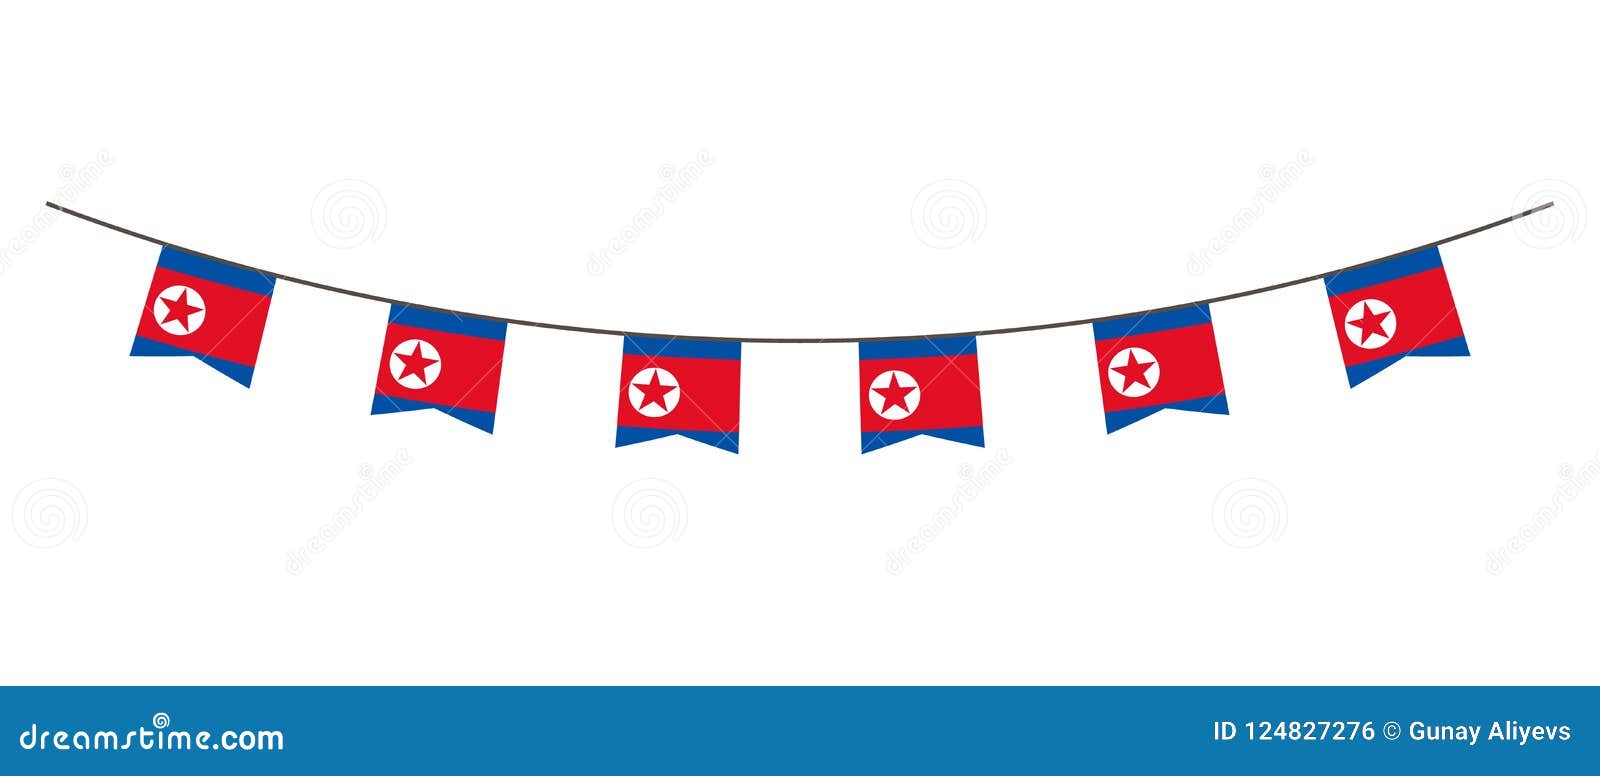 在北朝鲜旗子的颜色的旗布装饰诗歌选 在一条绳索的信号旗党的 狂欢节 节日 庆祝对于nati 库存例证 插画包括有